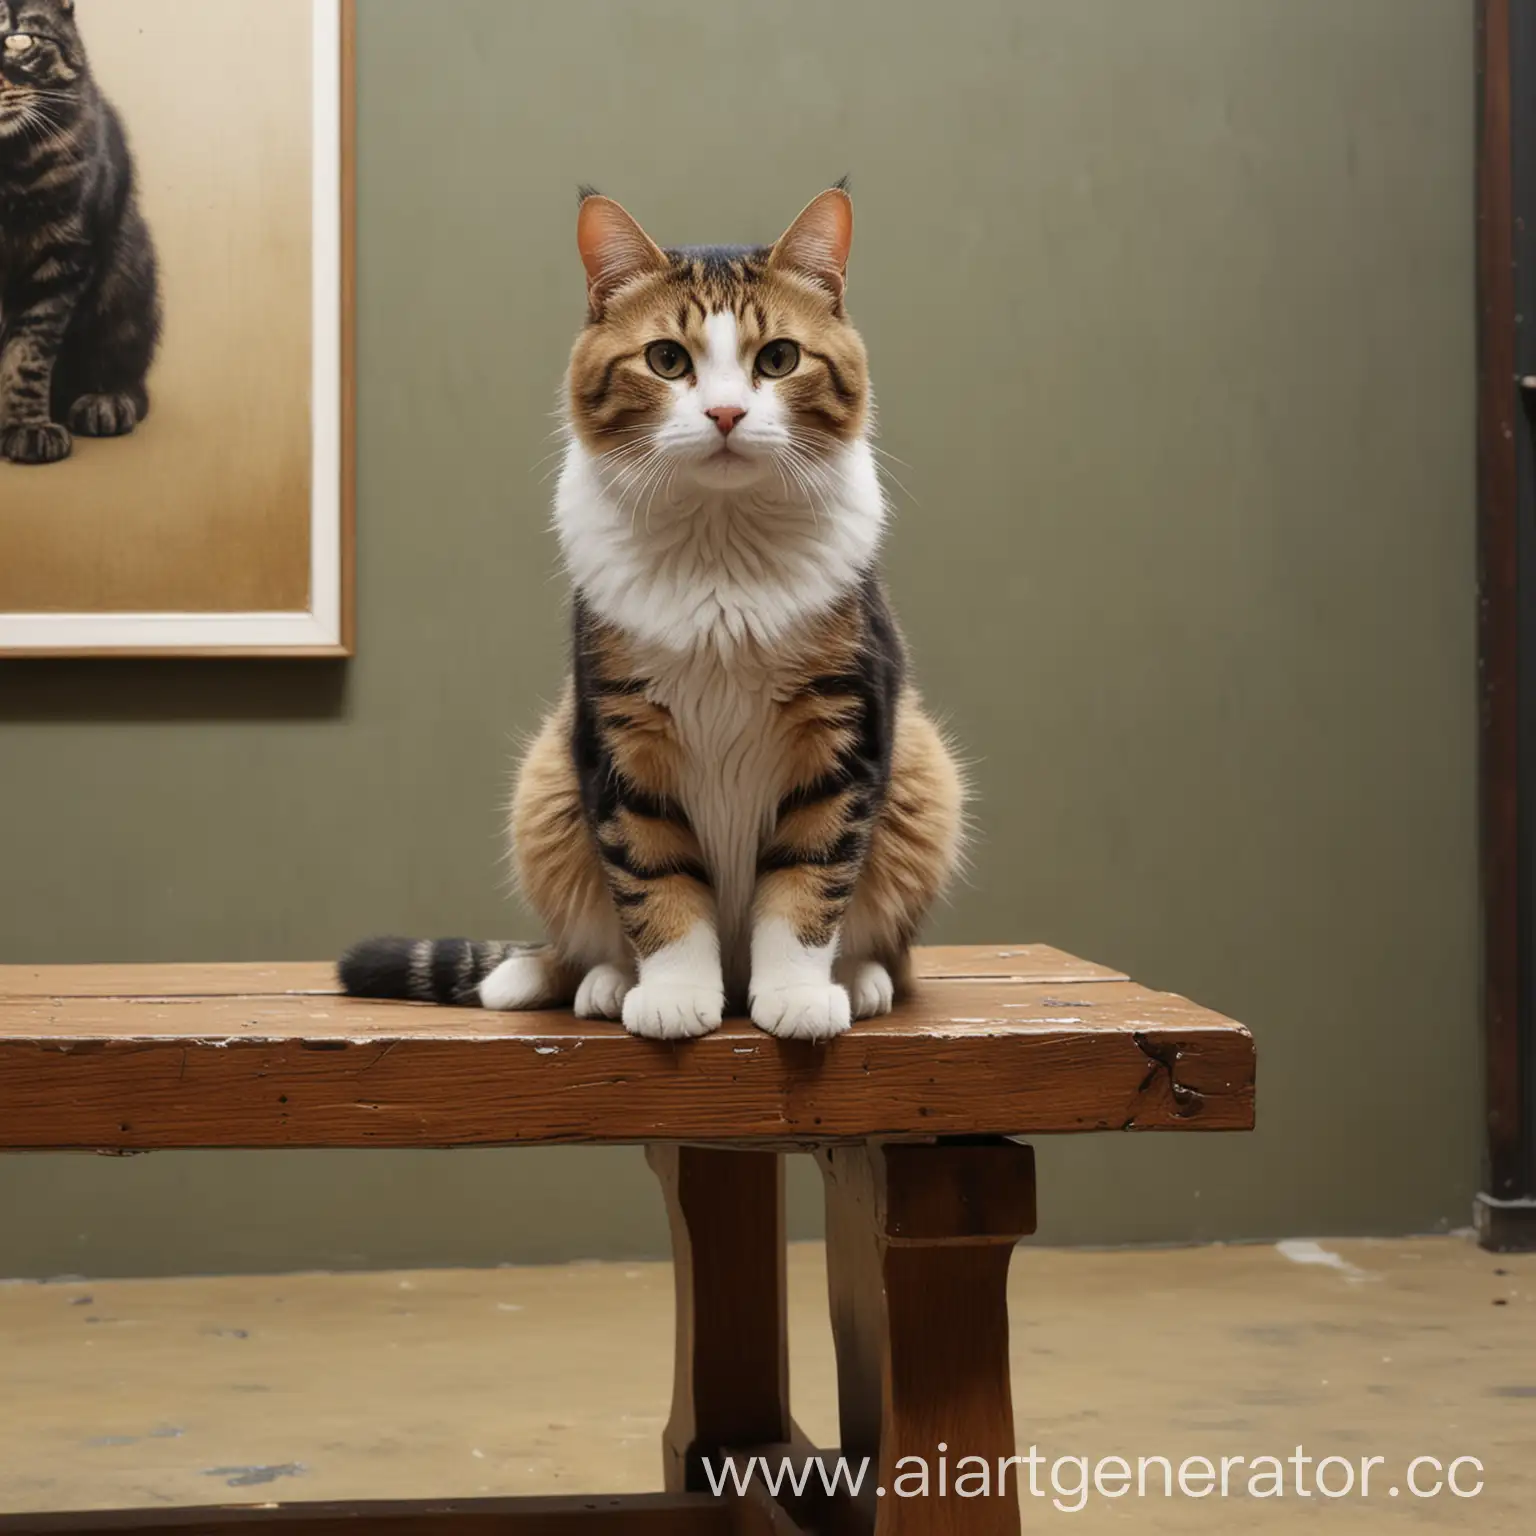 Суперреалистичная кошка, в музее, сидящая на скамейке, под картиной, Фотография, 3:4, реализм